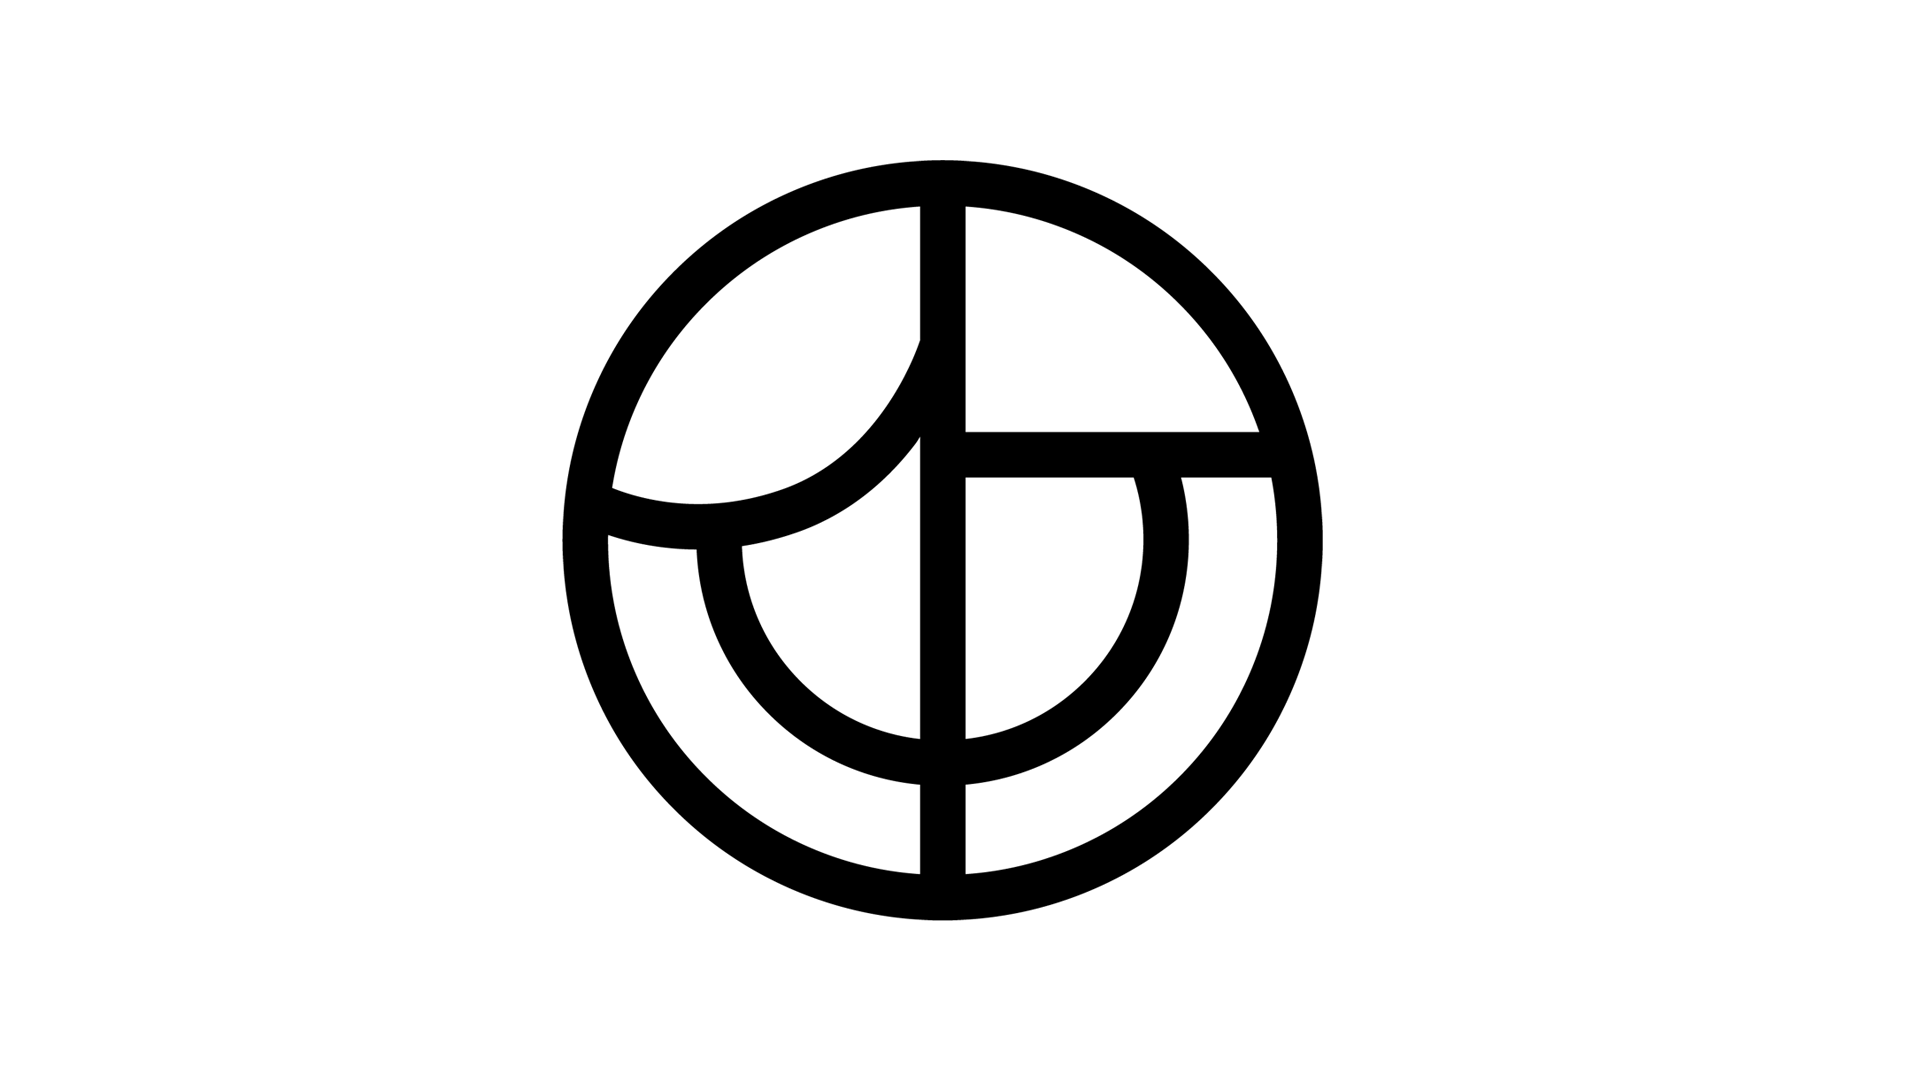 jafnlaunavottun-logo-1910x1080